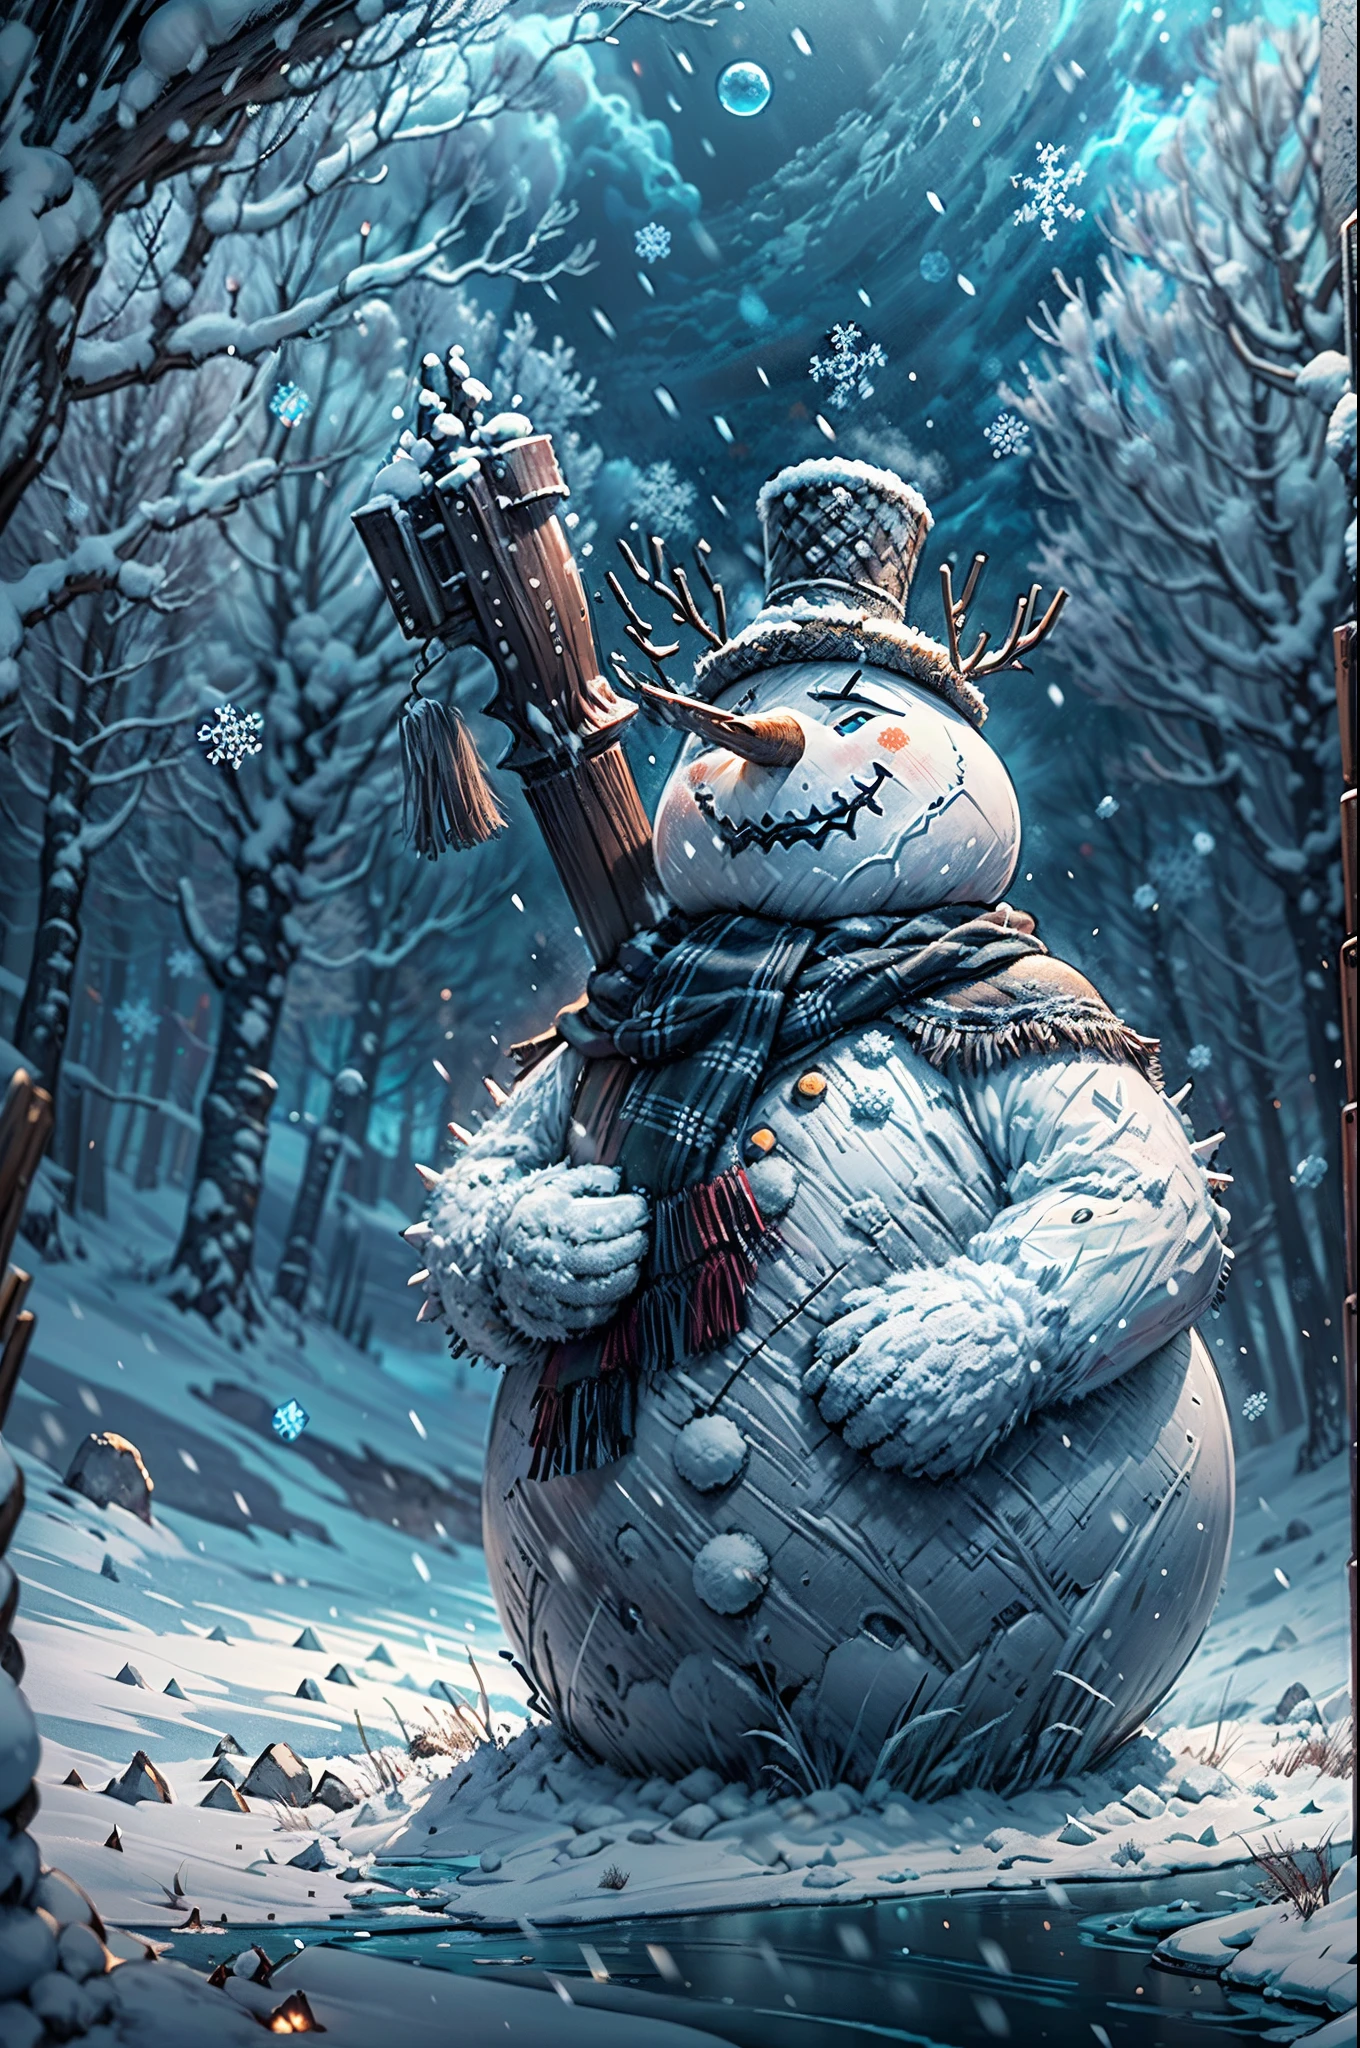 หัวหน้ามนุษย์หิมะ,มนุษย์หิมะที่ยิ่งใหญ่และสง่างาม,มนุษย์หิมะที่น่าประทับใจและทรงพลัง,มนุษย์หิมะที่โดดเด่นและน่าเกรงขาม,มนุษย์หิมะที่มีท่าทางเป็นผู้บังคับบัญชา,มนุษย์หิมะที่ชั่วร้ายและน่ากลัว,มนุษย์หิมะที่เย็นฉ่ำและหนาวเหน็บ,มนุษย์หิมะผู้สง่างามและมีเกียรติ,มนุษย์หิมะที่ท้าทายและดุร้าย,มนุษย์หิมะที่ปกคลุมไปด้วยน้ำแข็ง,มนุษย์หิมะพร้อมรบ,ดวงตาที่เปล่งประกายของมนุษย์หิมะ,น้ำแข็งย้อยเป็นประกายบนร่างของมนุษย์หิมะ,ลมหายใจเย็นและหนาวจัดของมนุษย์หิมะ,มนุษย์หิมะที่หุ้มเกราะและน่าเกรงขาม,ปรากฏขึ้นเหนือภูมิทัศน์ของเกม,ล้อมรอบด้วยสภาพแวดล้อมที่หนาวเย็นและรกร้าง,เกล็ดหิมะแวววาวตกลงมารอบตัวมนุษย์หิมะ,ลมหนาวที่พัดผ่านฉาก,เมฆมืดและเป็นลางไม่ดีรวมตัวกันบนท้องฟ้า,หนามน้ำแข็งยื่นออกมาจากร่างของมนุษย์หิมะ,ออร่าลึกลับและมหัศจรรย์ล้อมรอบมนุษย์หิมะ,มนุษย์หิมะถืออาวุธอันทรงพลังอยู่ในมือ,รายละเอียดแกะสลักบนร่างของมนุษย์หิมะ,ทอดเงาตามหลอกหลอนบนพื้นหิมะ,พื้นผิวที่สวยงามและมีรายละเอียดบนตุ๊กตาหิมะ,เผยให้เห็นทุกรอยร้าวและรอยแยก,การแสดงภาพมนุษย์หิมะที่เป็นธรรมชาติและสมจริง,ความงามอันน่าทึ่งของโลกเกมที่ปกคลุมไปด้วยหิมะ,สีสันสดใสตัดกับทิวทัศน์ที่เต็มไปด้วยหิมะ,แสงแบบไดนามิกที่ส่องสว่างตุ๊กตาหิมะจากมุมที่ต่างกัน,สร้างเงาและไฮไลท์ที่น่าทึ่ง,บรรยากาศที่ไม่มีตัวตนและนอกโลก,ผู้เล่นจะได้ดื่มด่ำไปกับโลกแห่งน้ำแข็งและหิมะ,captivating and immersive artwork that captures the essence of the หัวหน้ามนุษย์หิมะ in Elden Ring.